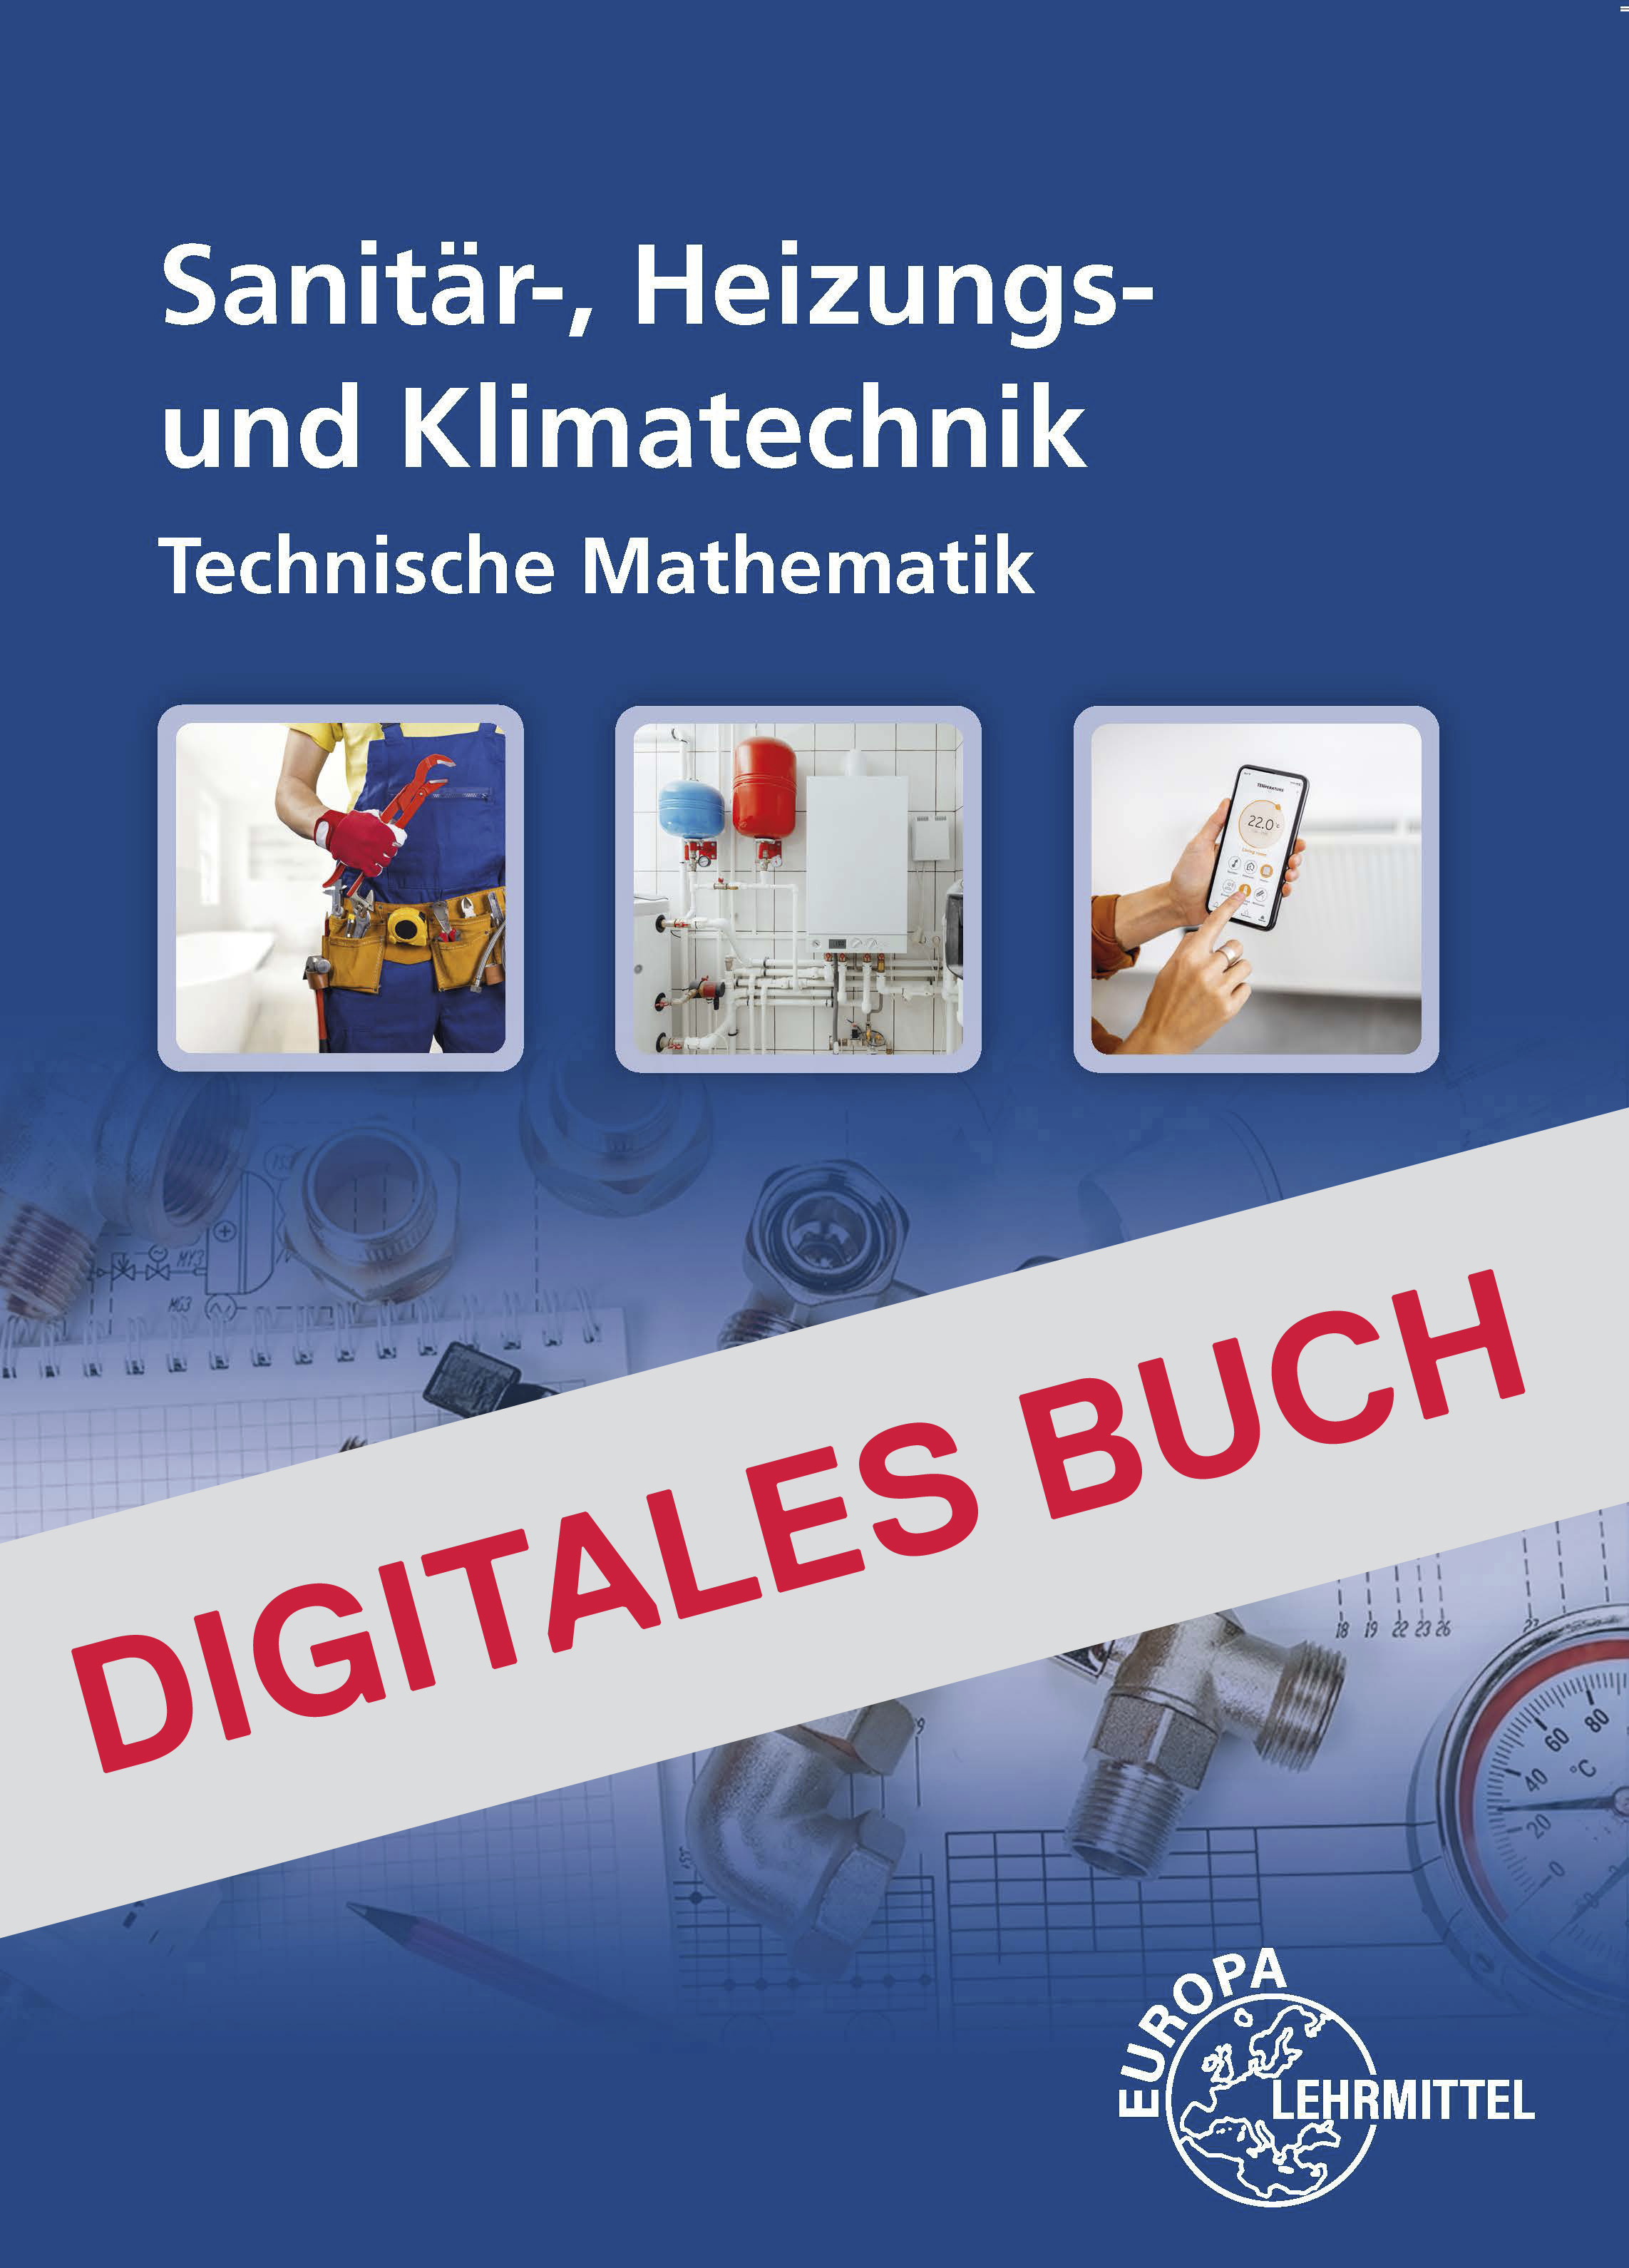 Technische Mathematik - Sanitär-, Heizungs- und Klimatechnik - Digitales Buch